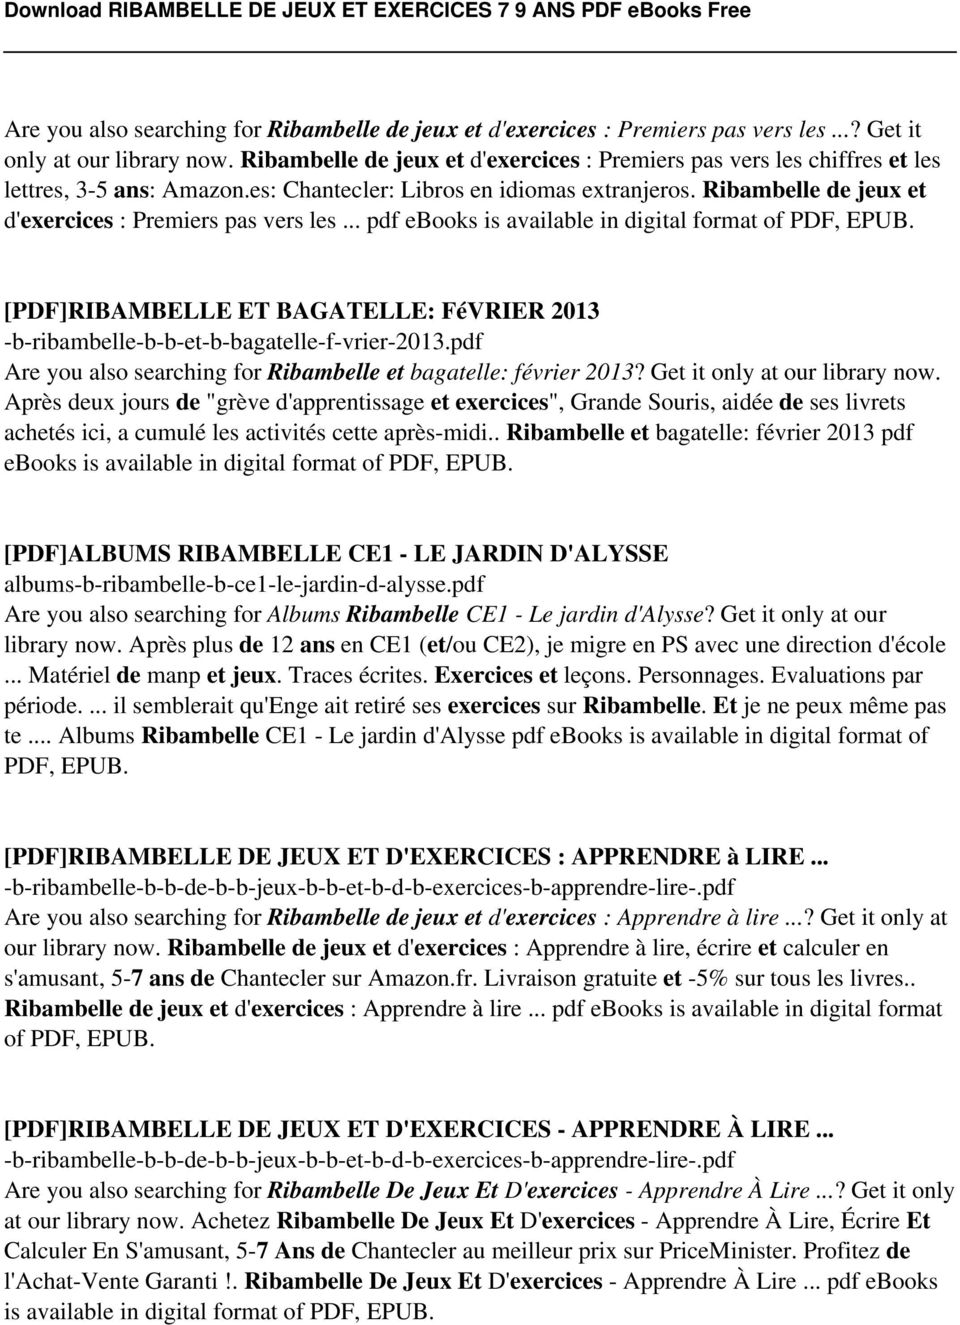 Ribambelle de jeux et d'exercices : Premiers pas vers les... pdf ebooks is available in digital format of PDF, EPUB.